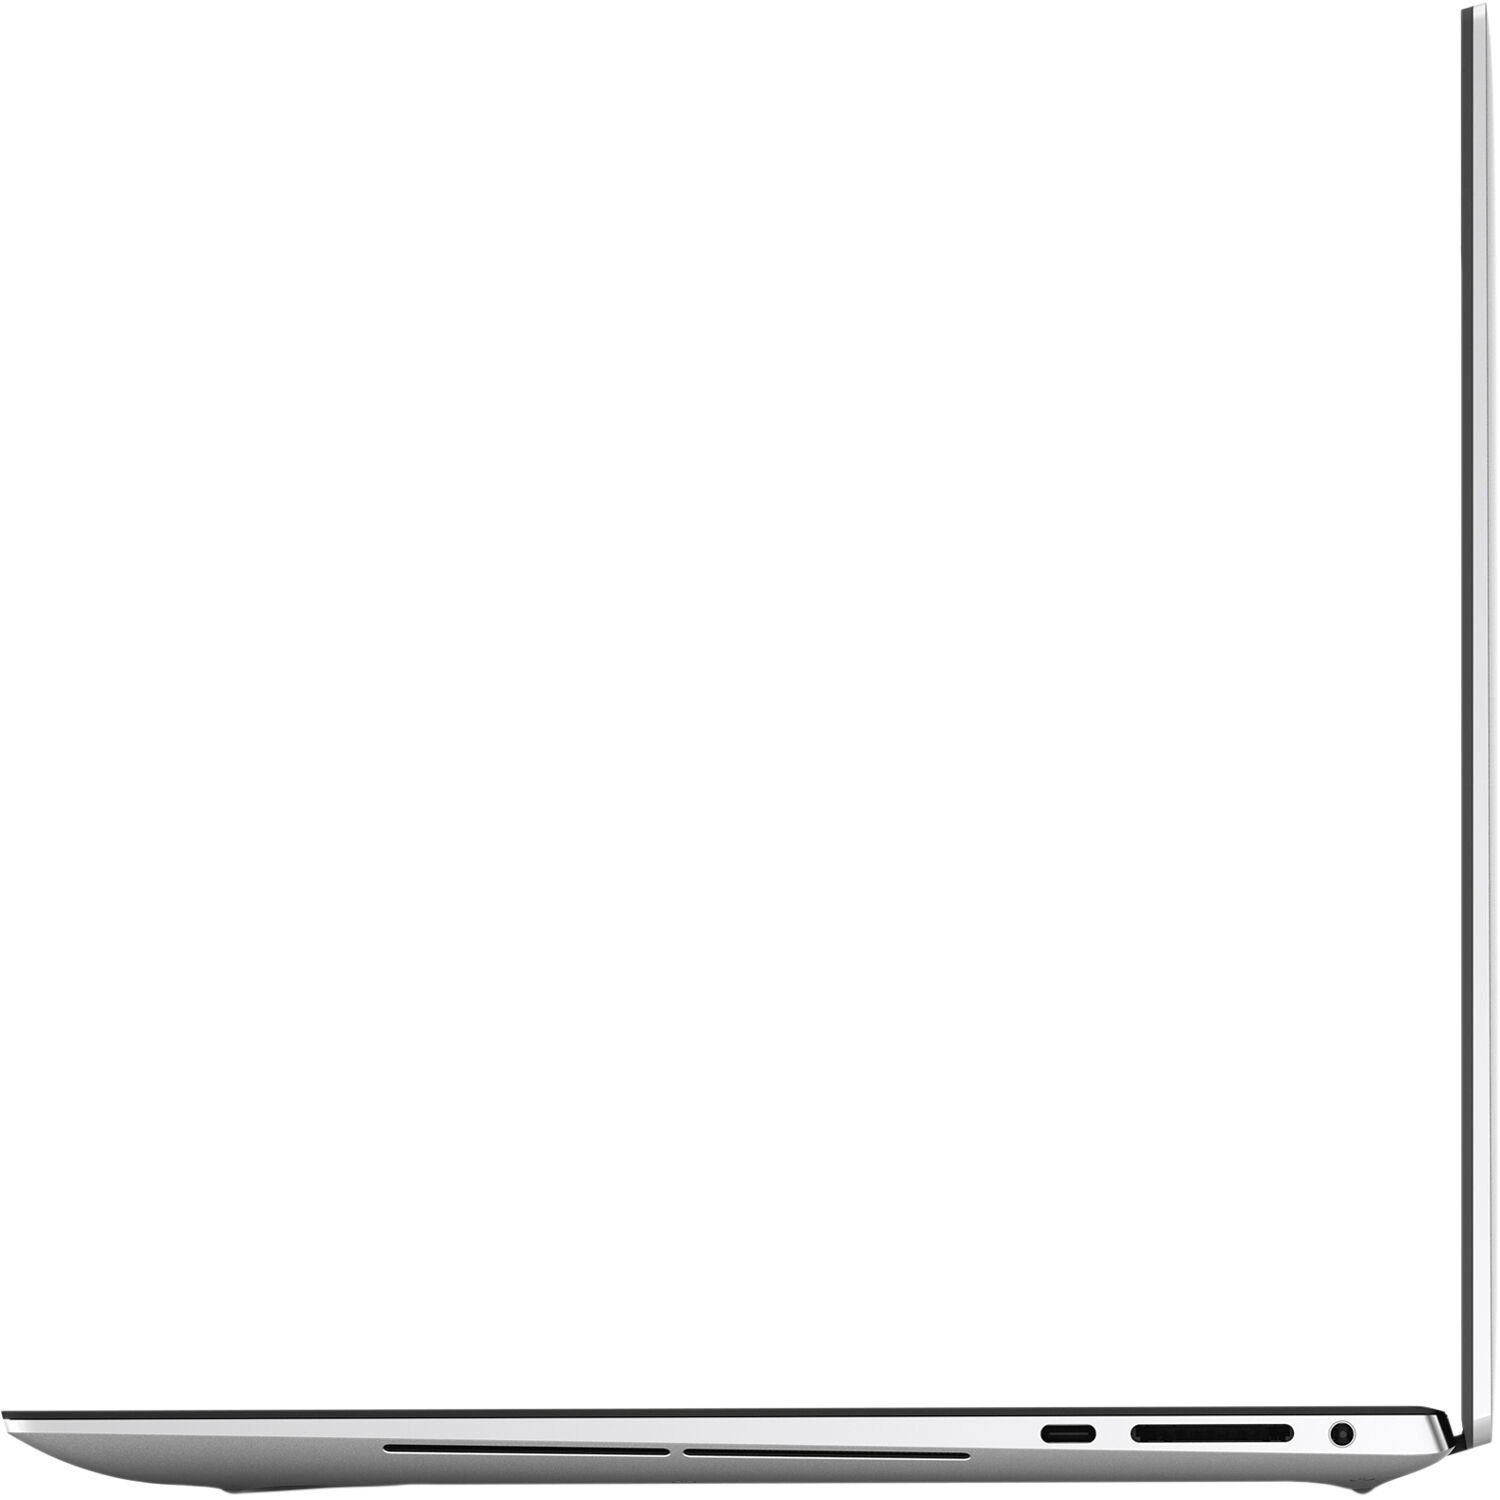 Ноутбук Dell XPS 15 (9500) (N099XPS9500UA_WP)фото